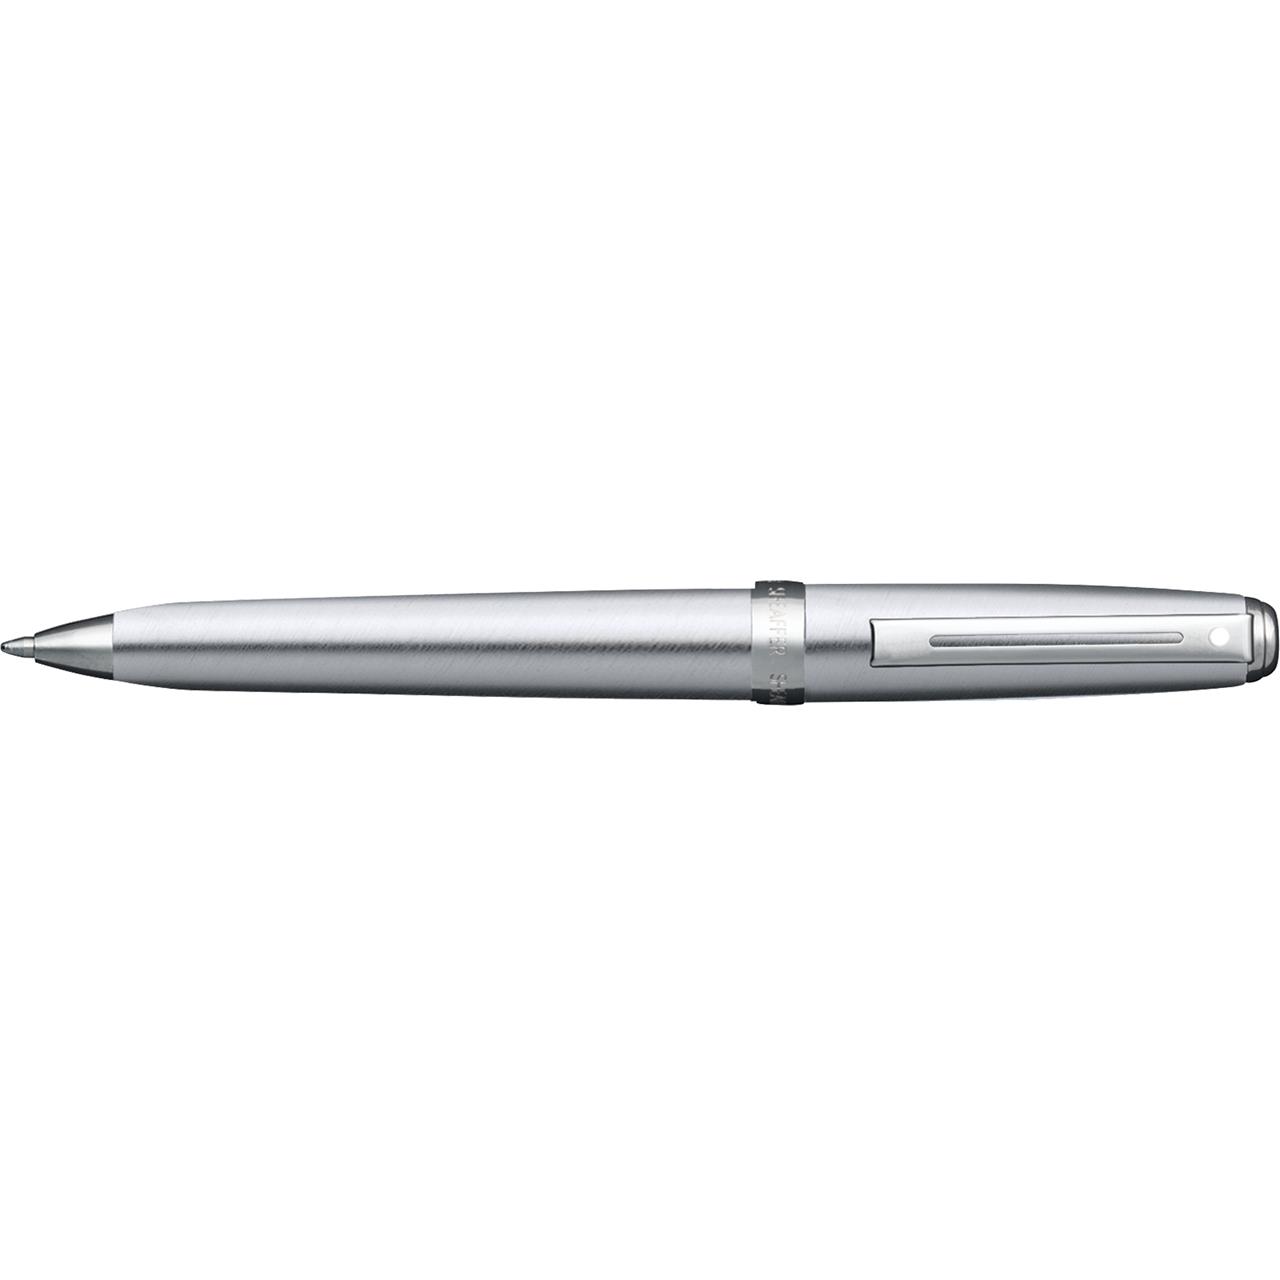 Sheaffer Pen - Brushed Chrome